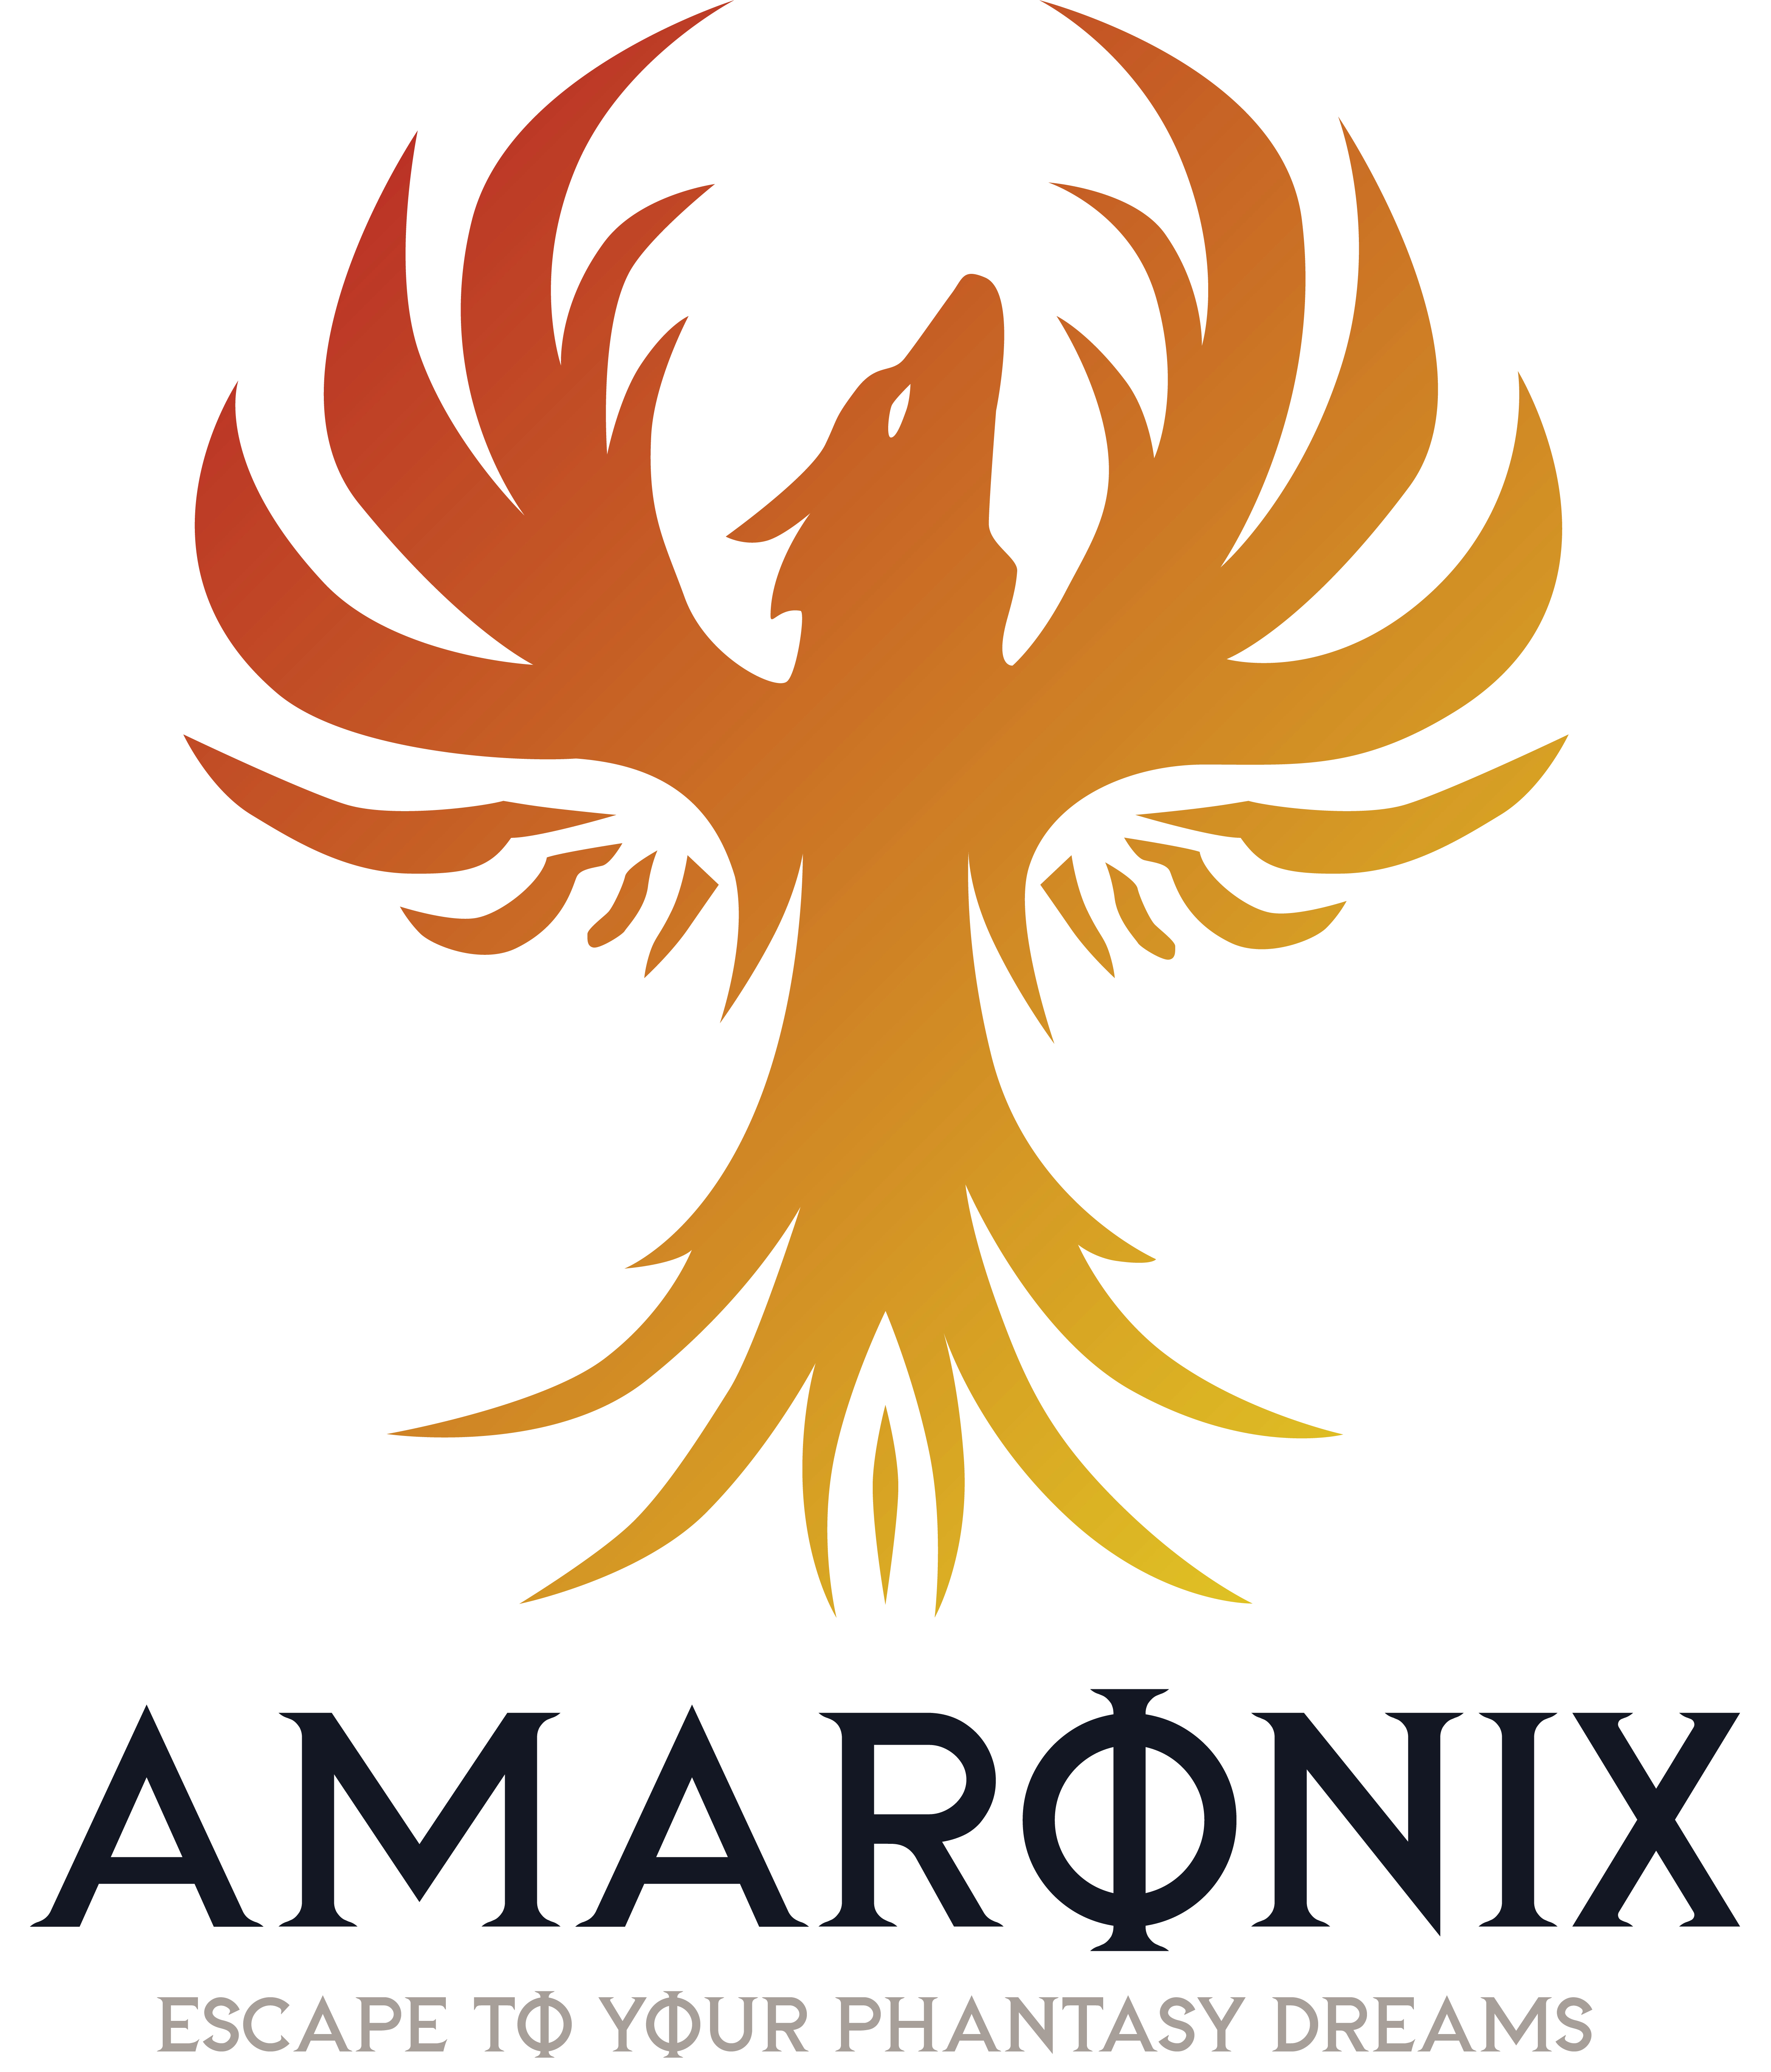 The primary logo of Amaronix Co. Ltd.